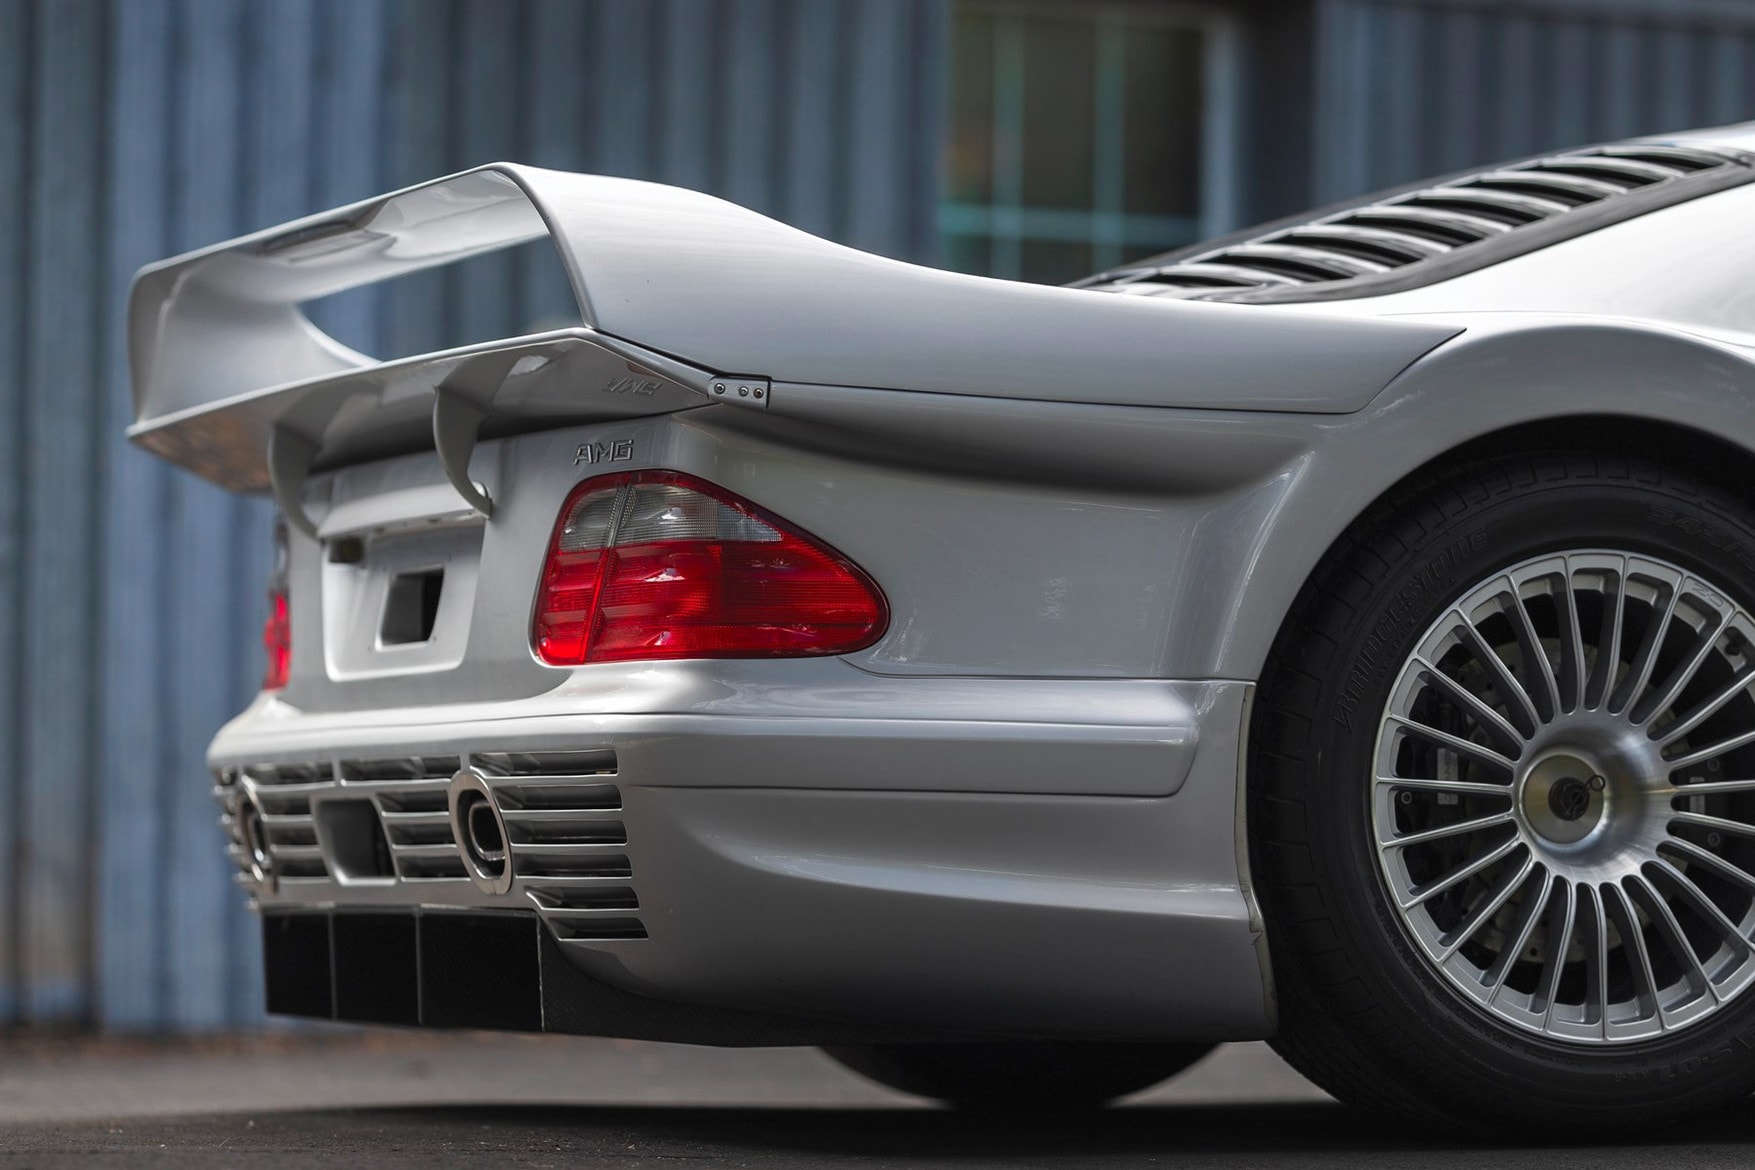 1998 年產之跑車 Mercedes-Benz AMG CLK GTR 將公開拍賣